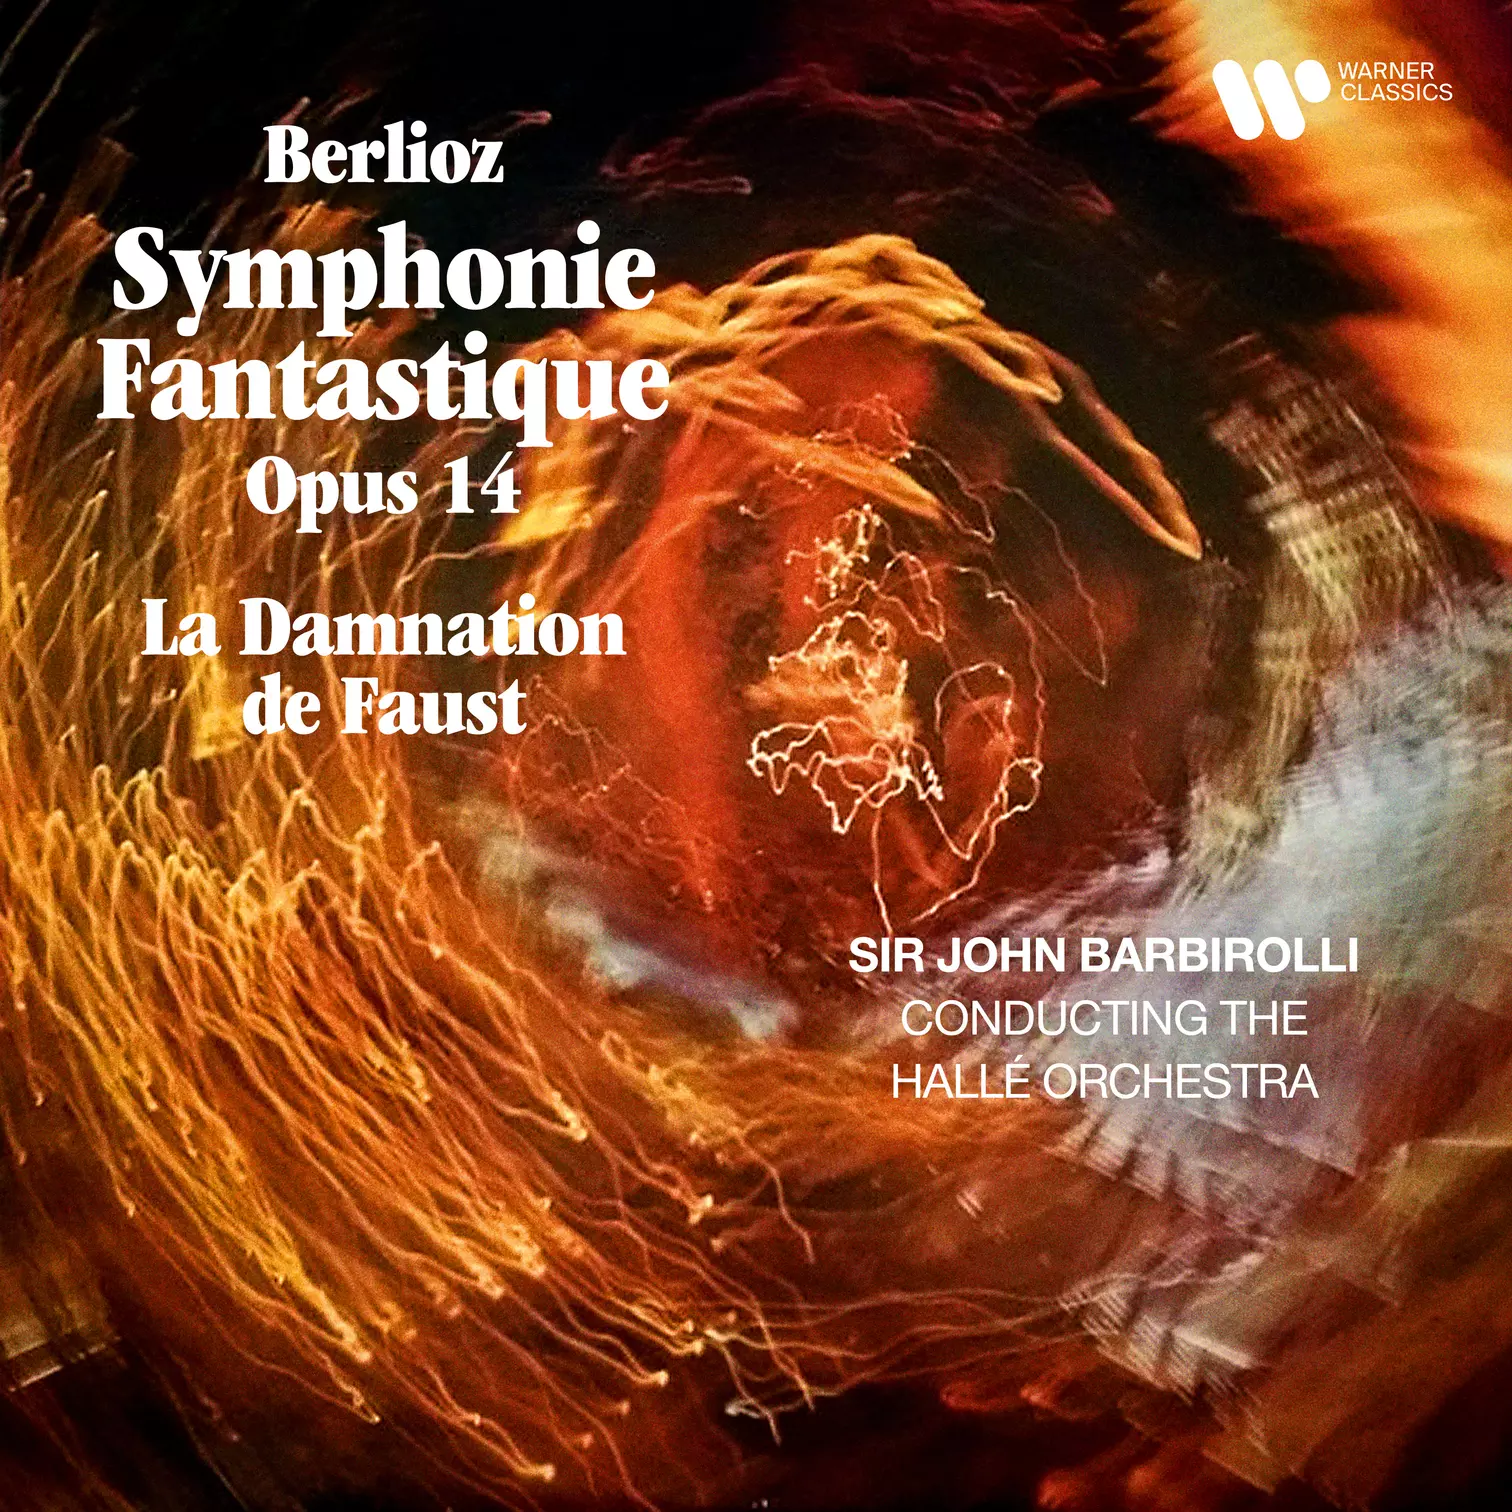 Berlioz: Symphonie Fantastique & Extraits de La Damnation de Faust